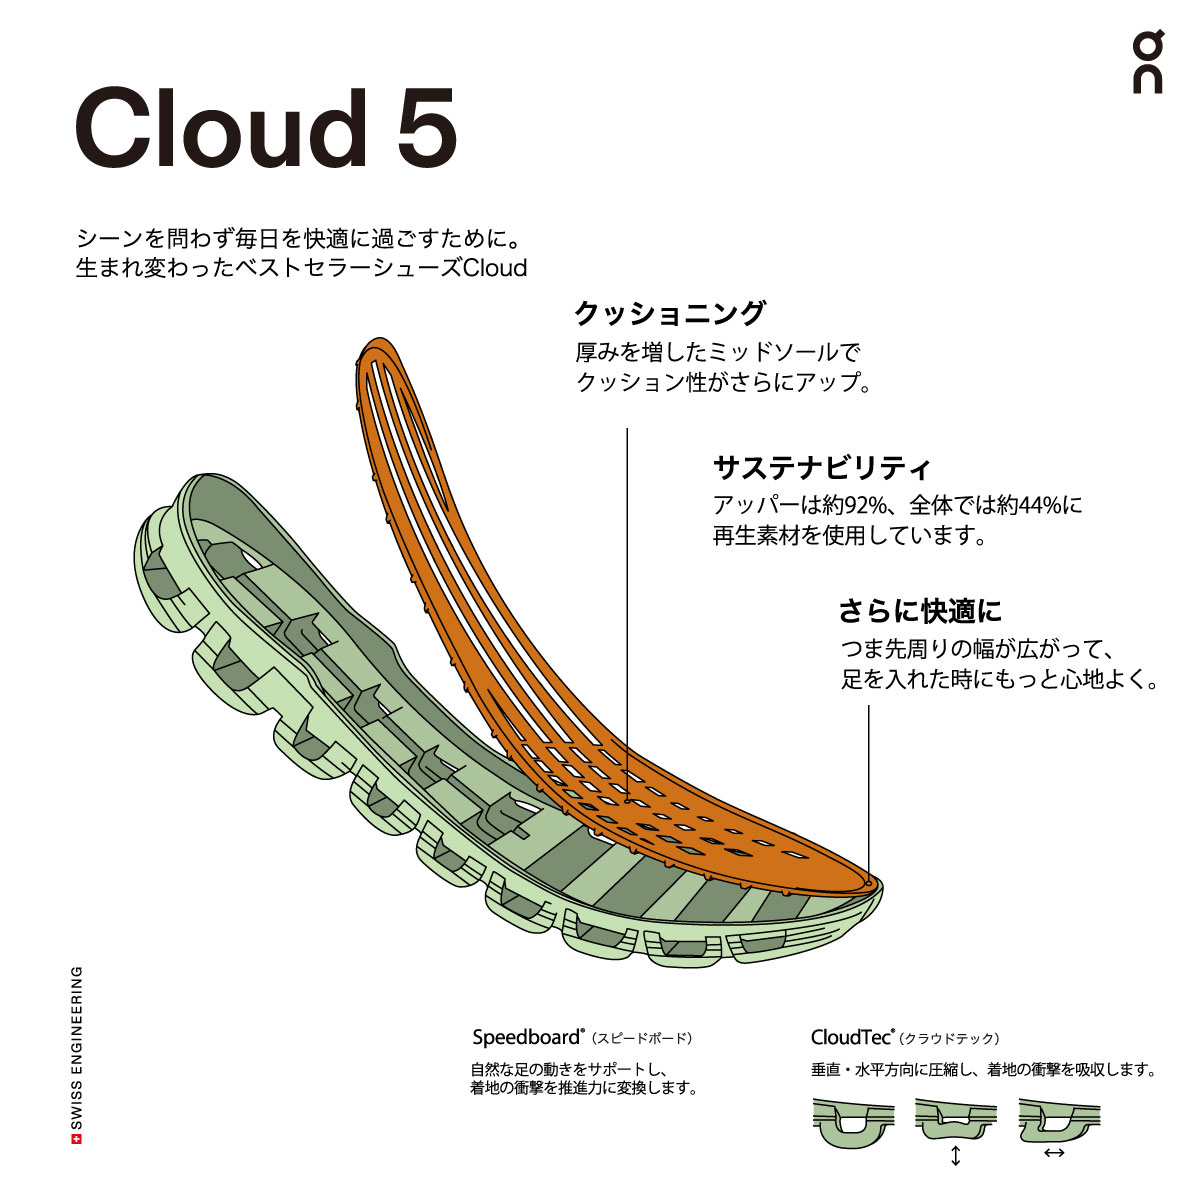 On Cloud 5